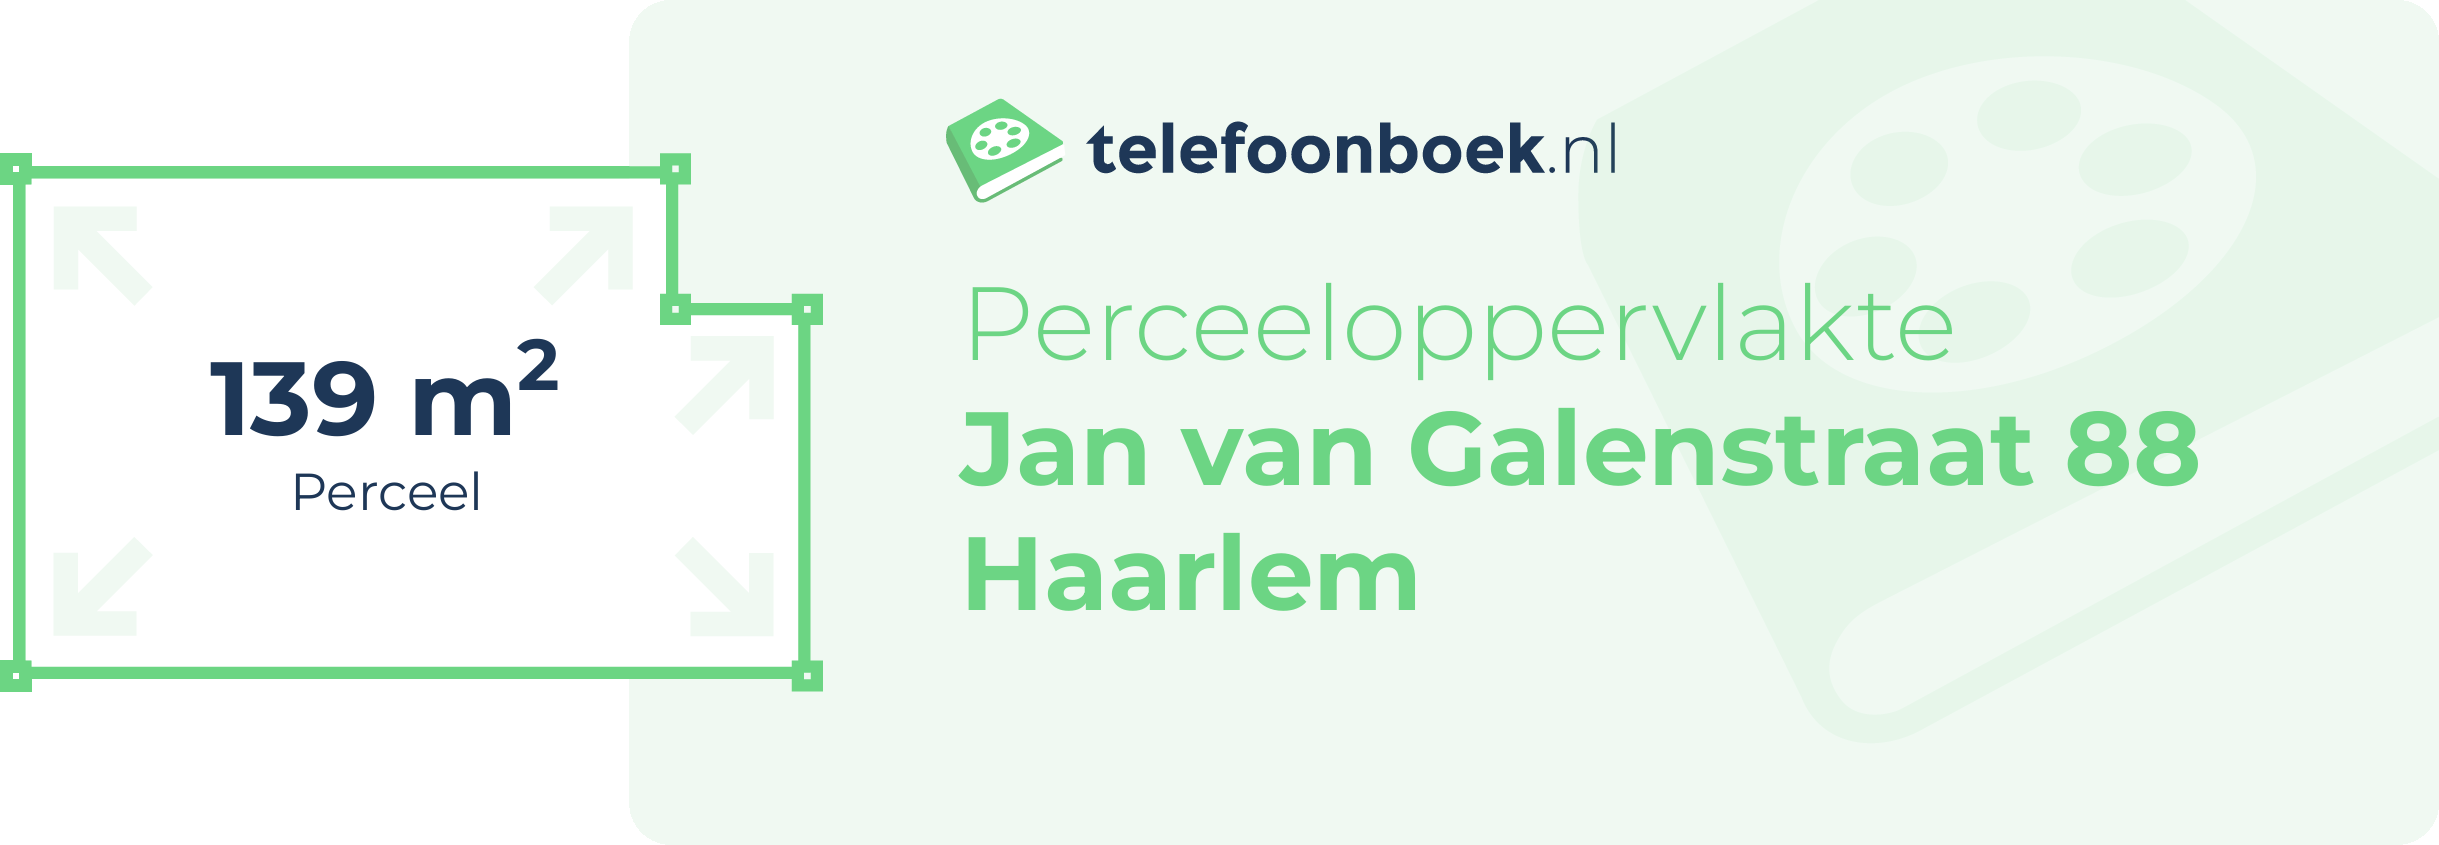 Perceeloppervlakte Jan Van Galenstraat 88 Haarlem